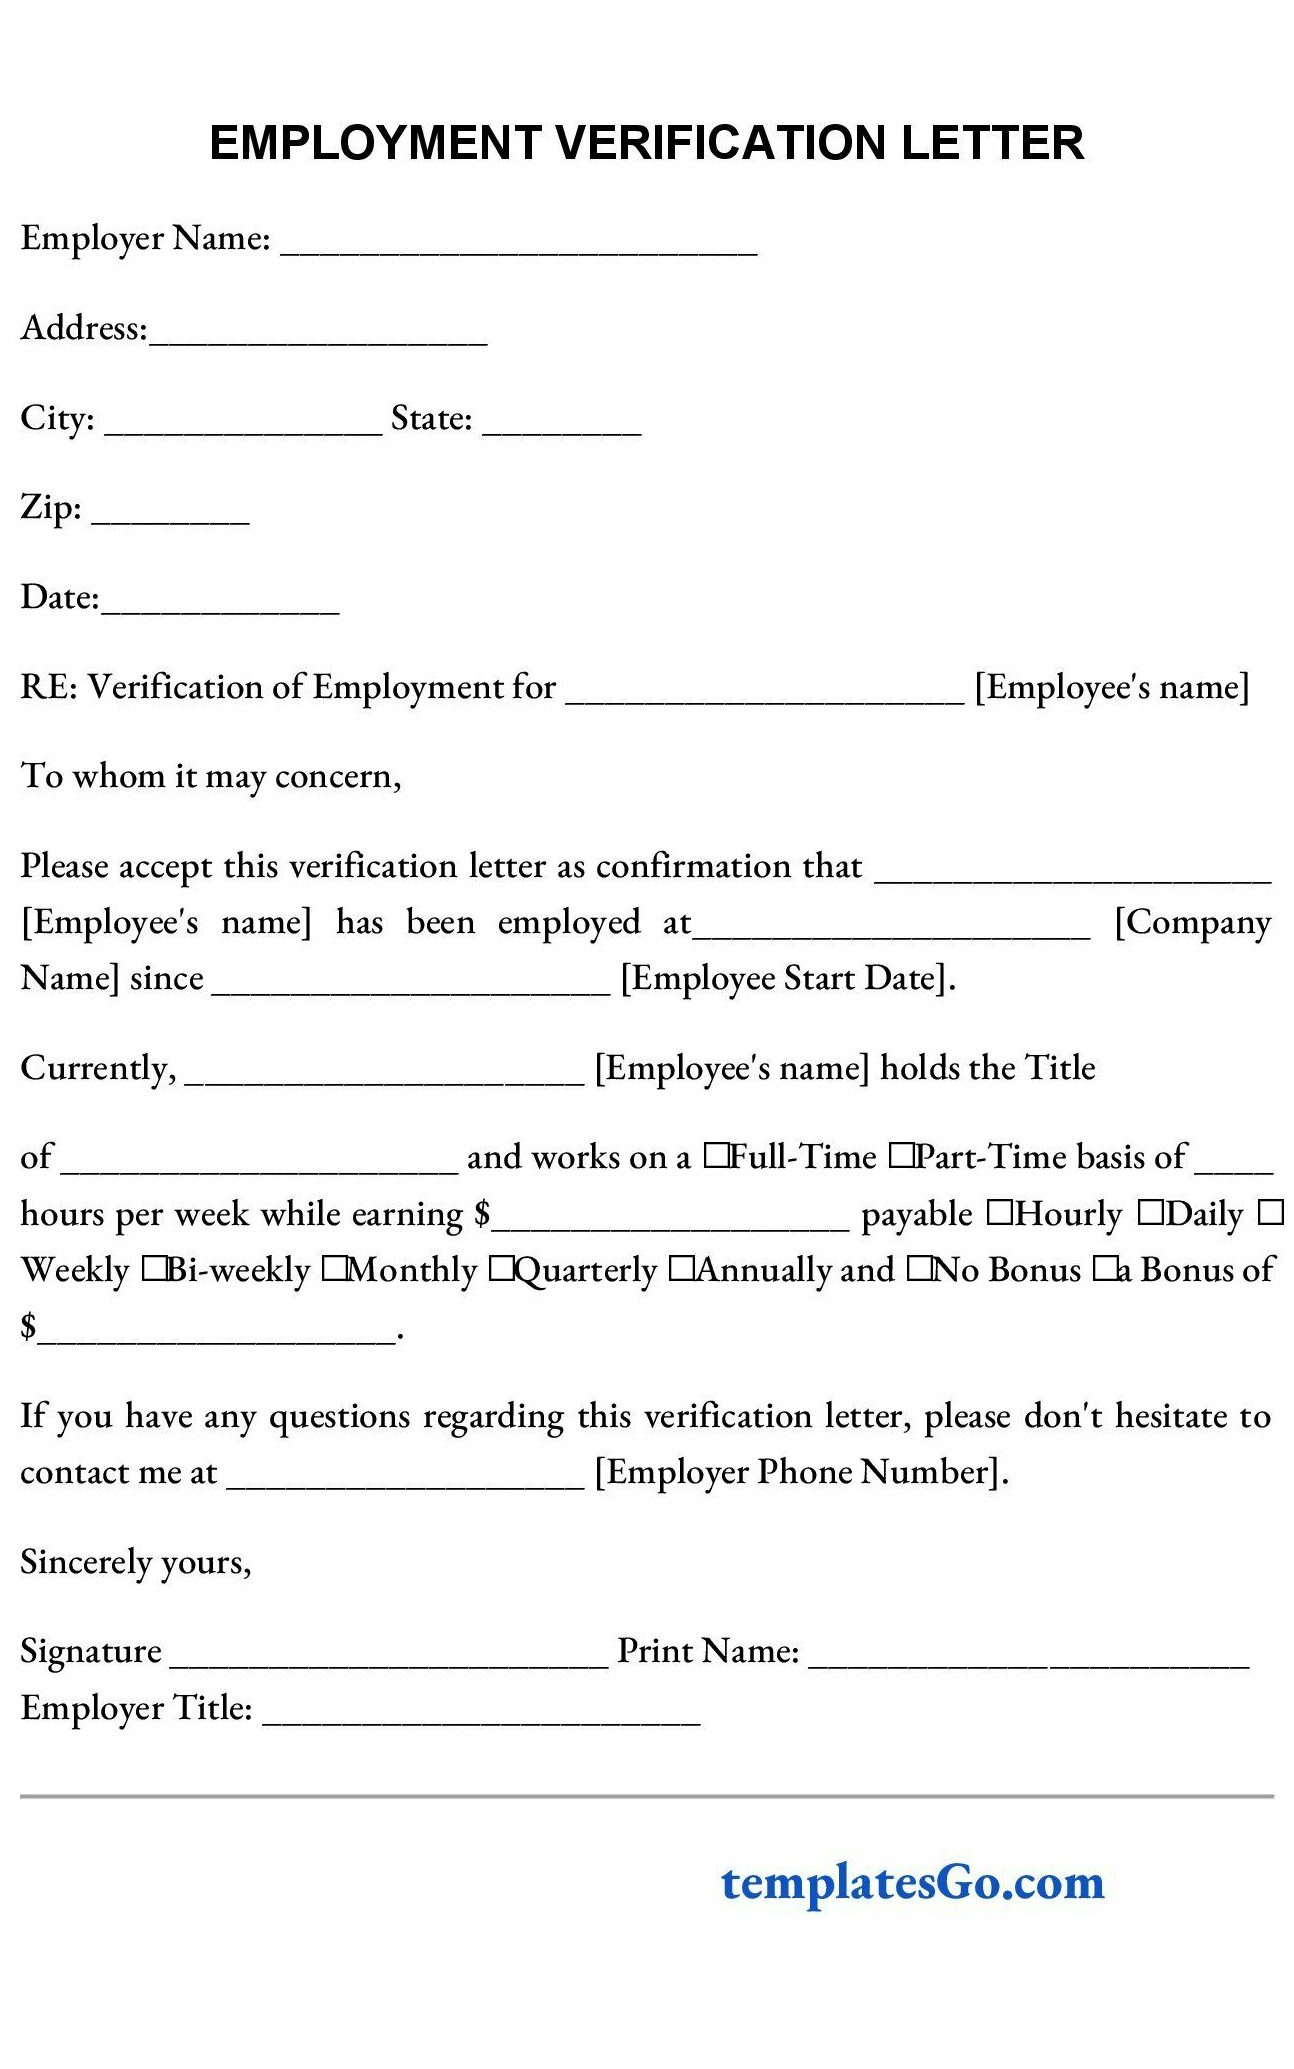 Employment Verification Letter form